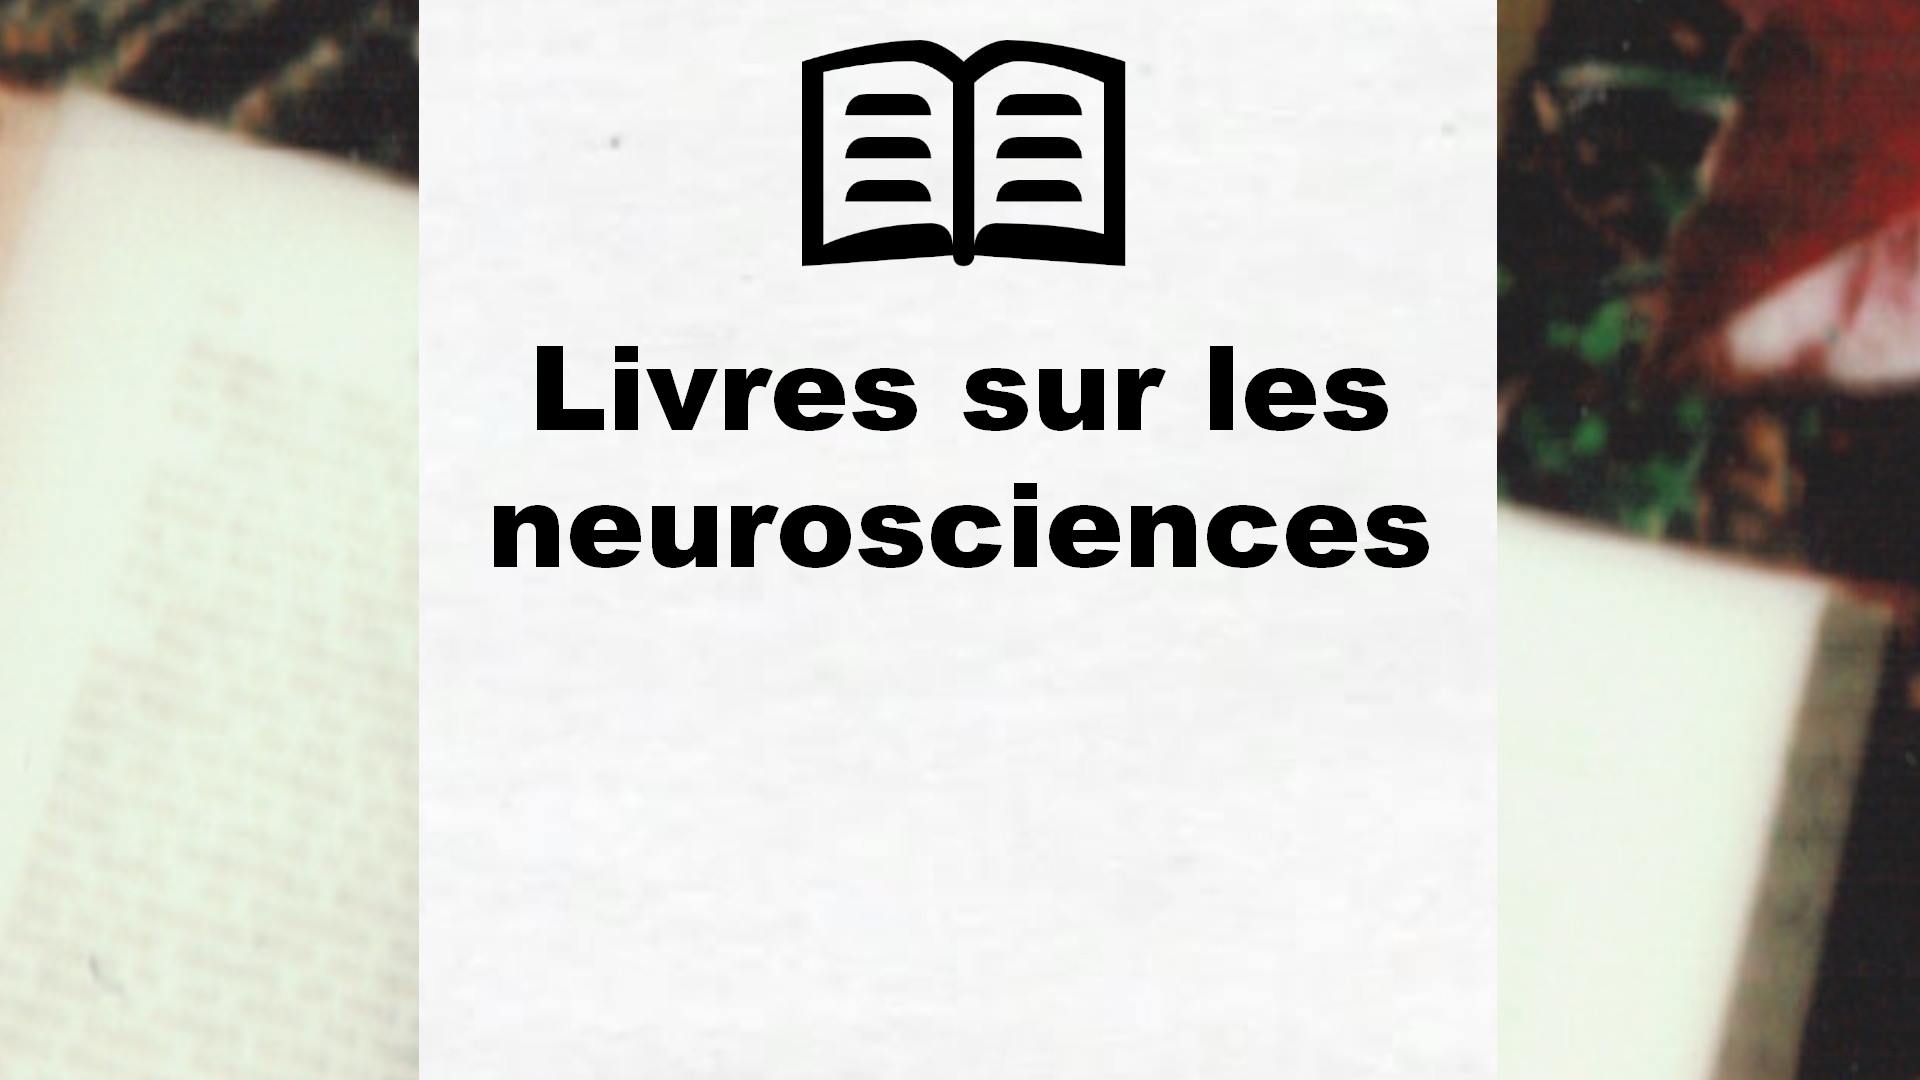 Livres sur les neurosciences